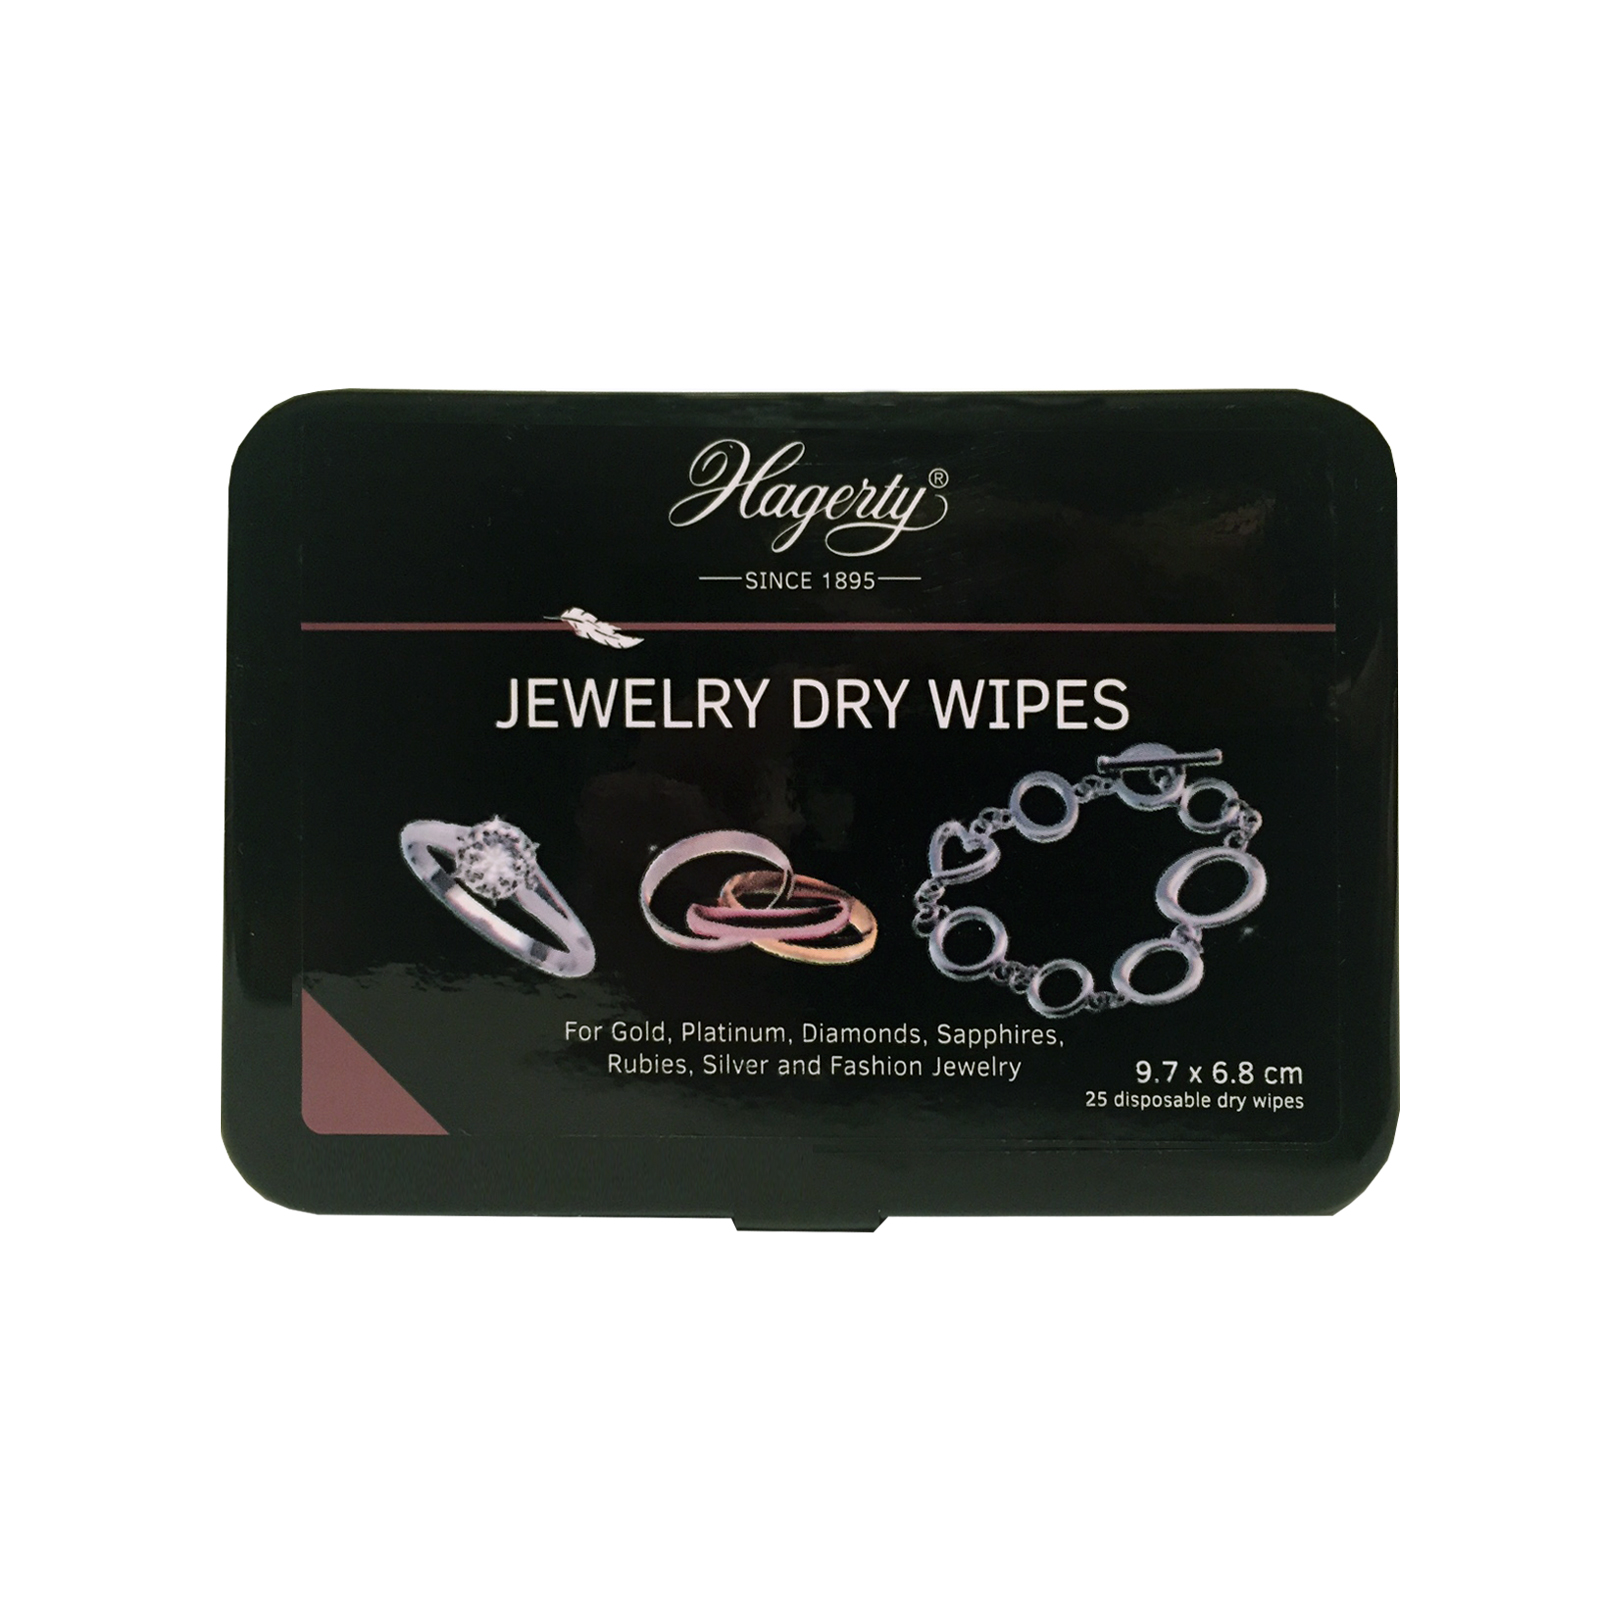 Hagerty Jewel Dry Wipes, 25 Einwegtücher, 97 x 68 mm